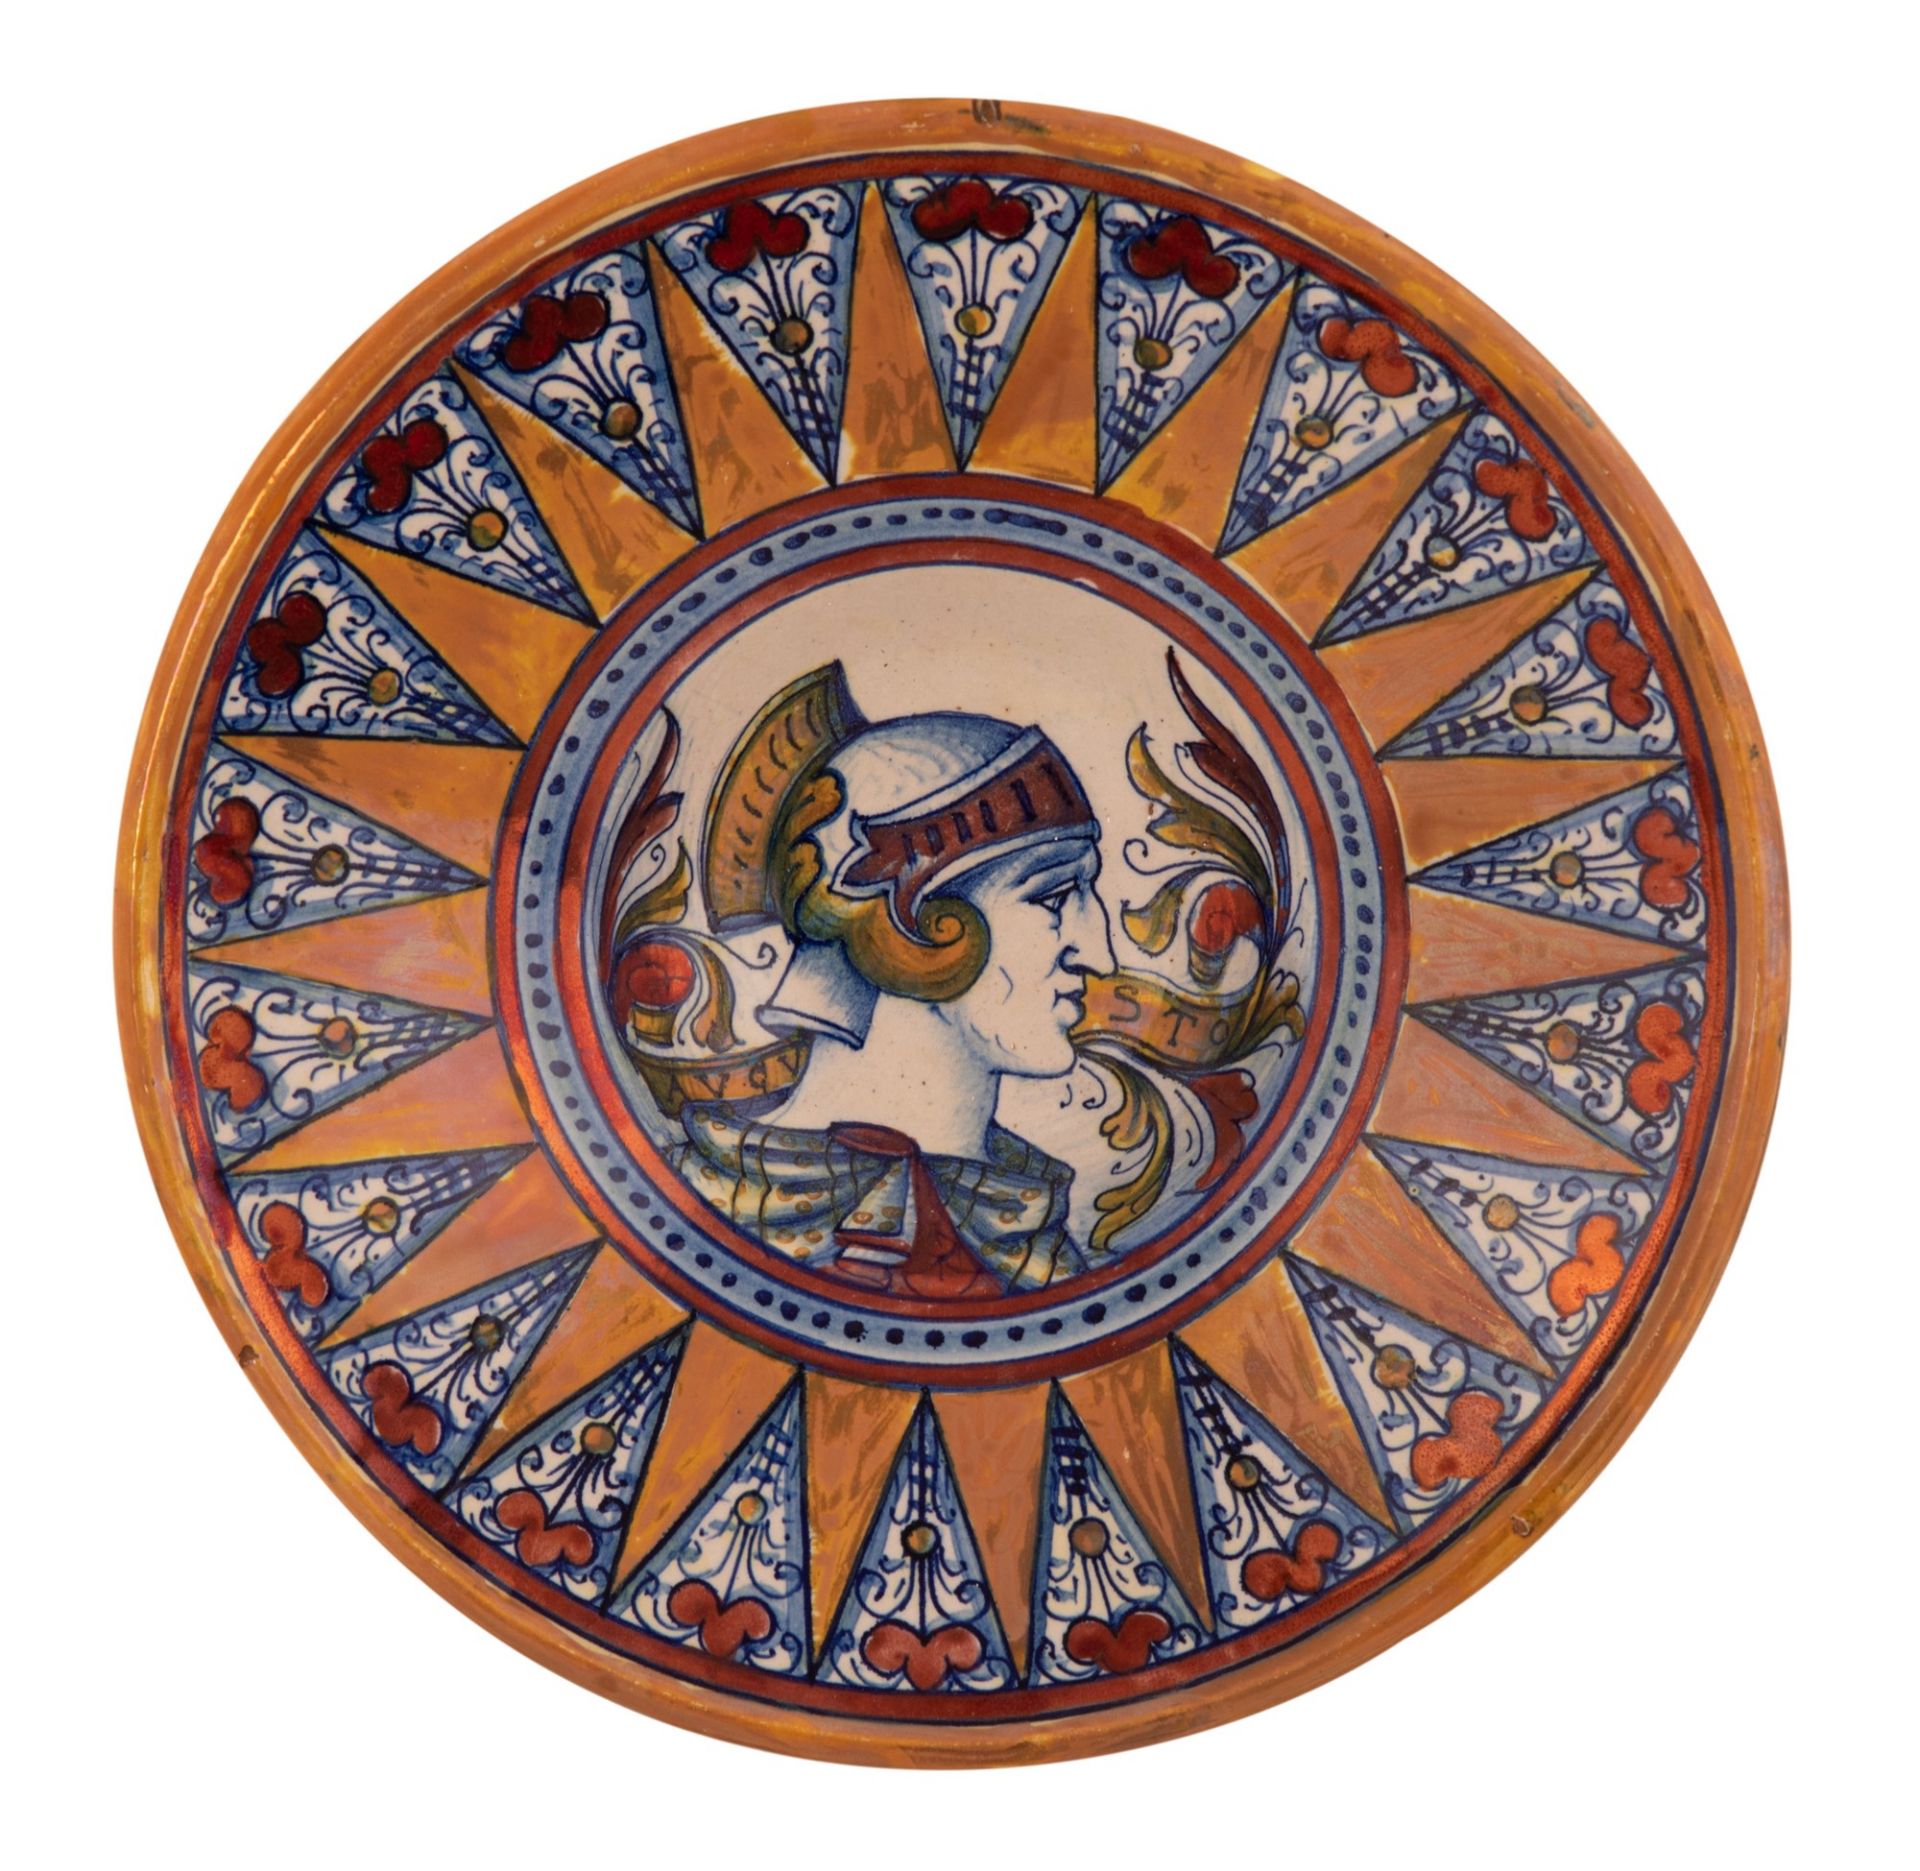  4 piatti in maiolica a lustro Gualdo Tadino raffigurante imperatori  - Bild 7 aus 10